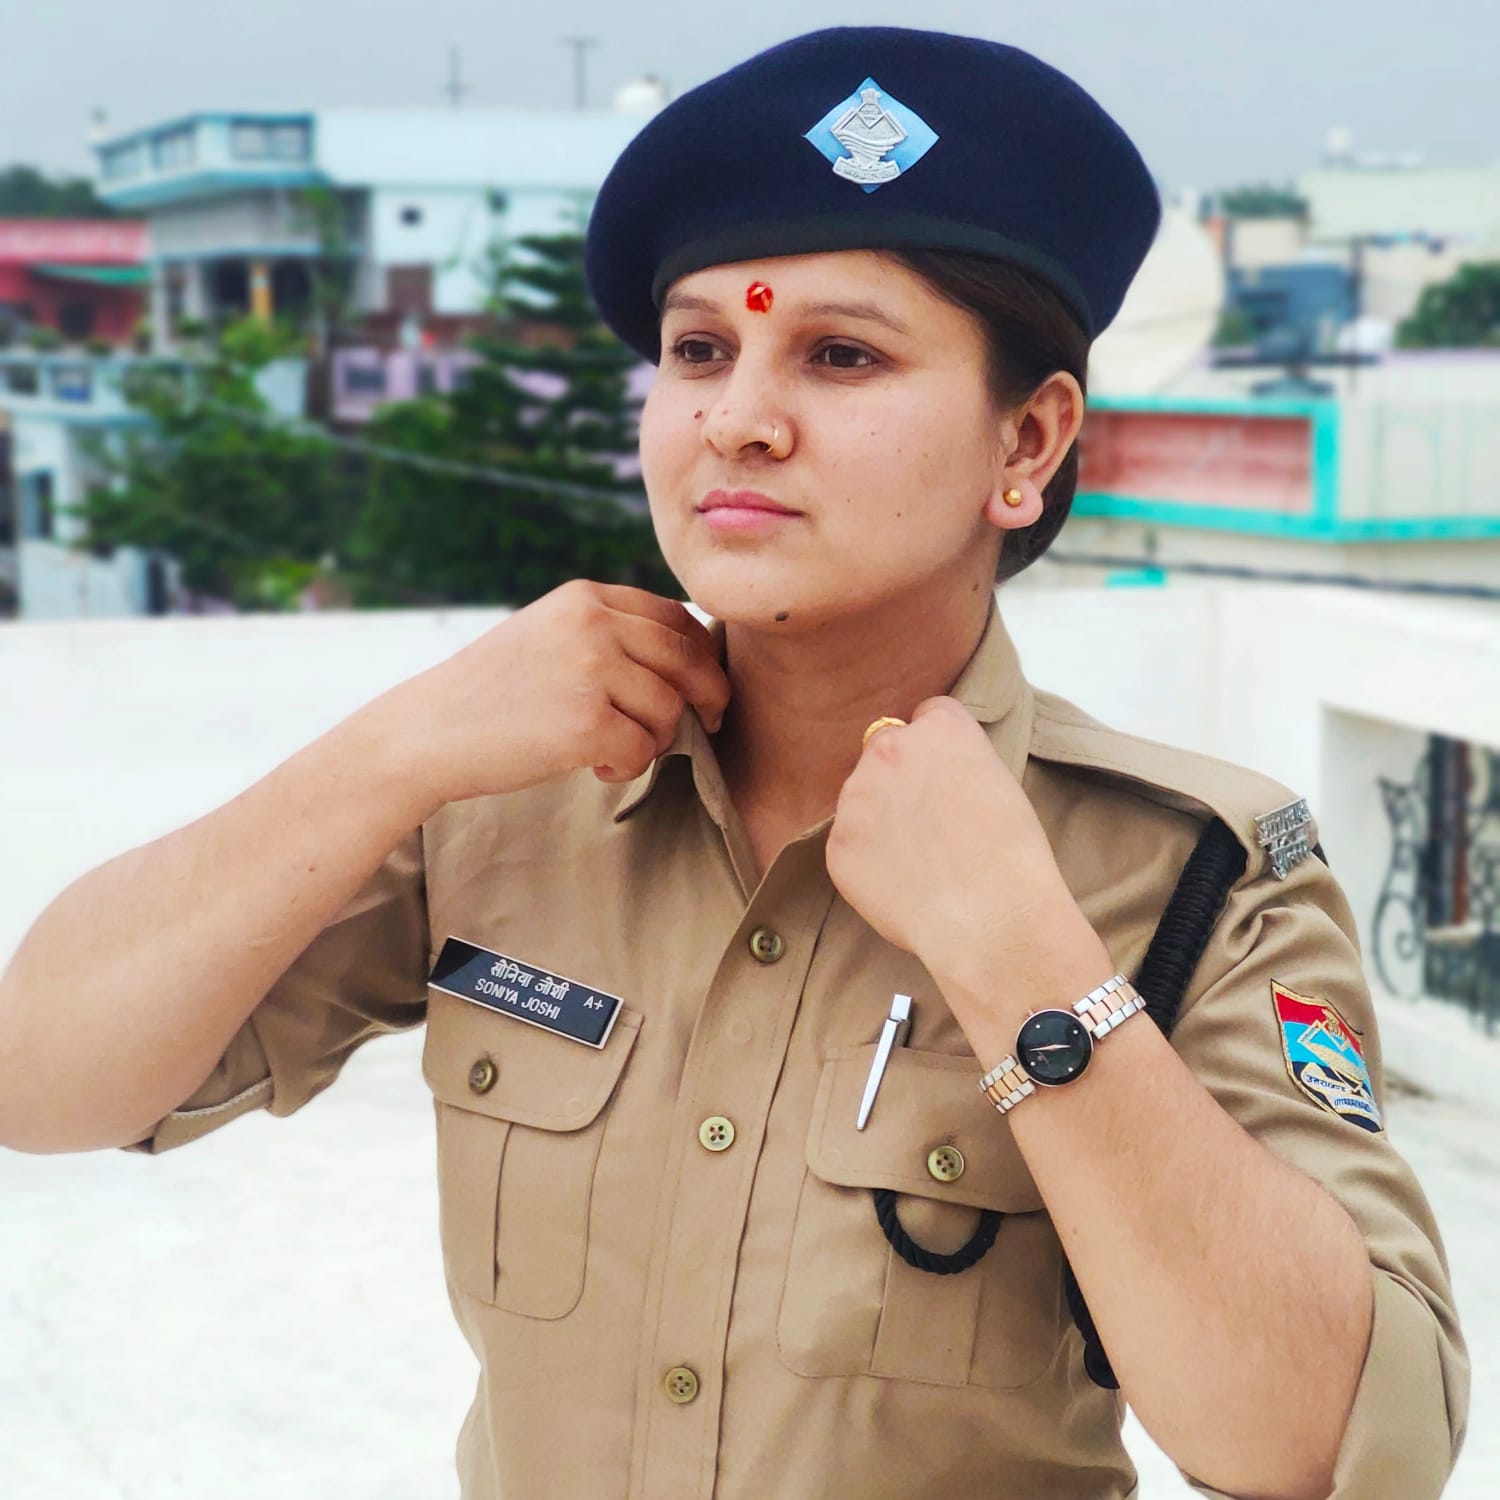 Sonia Joshi in Uniform